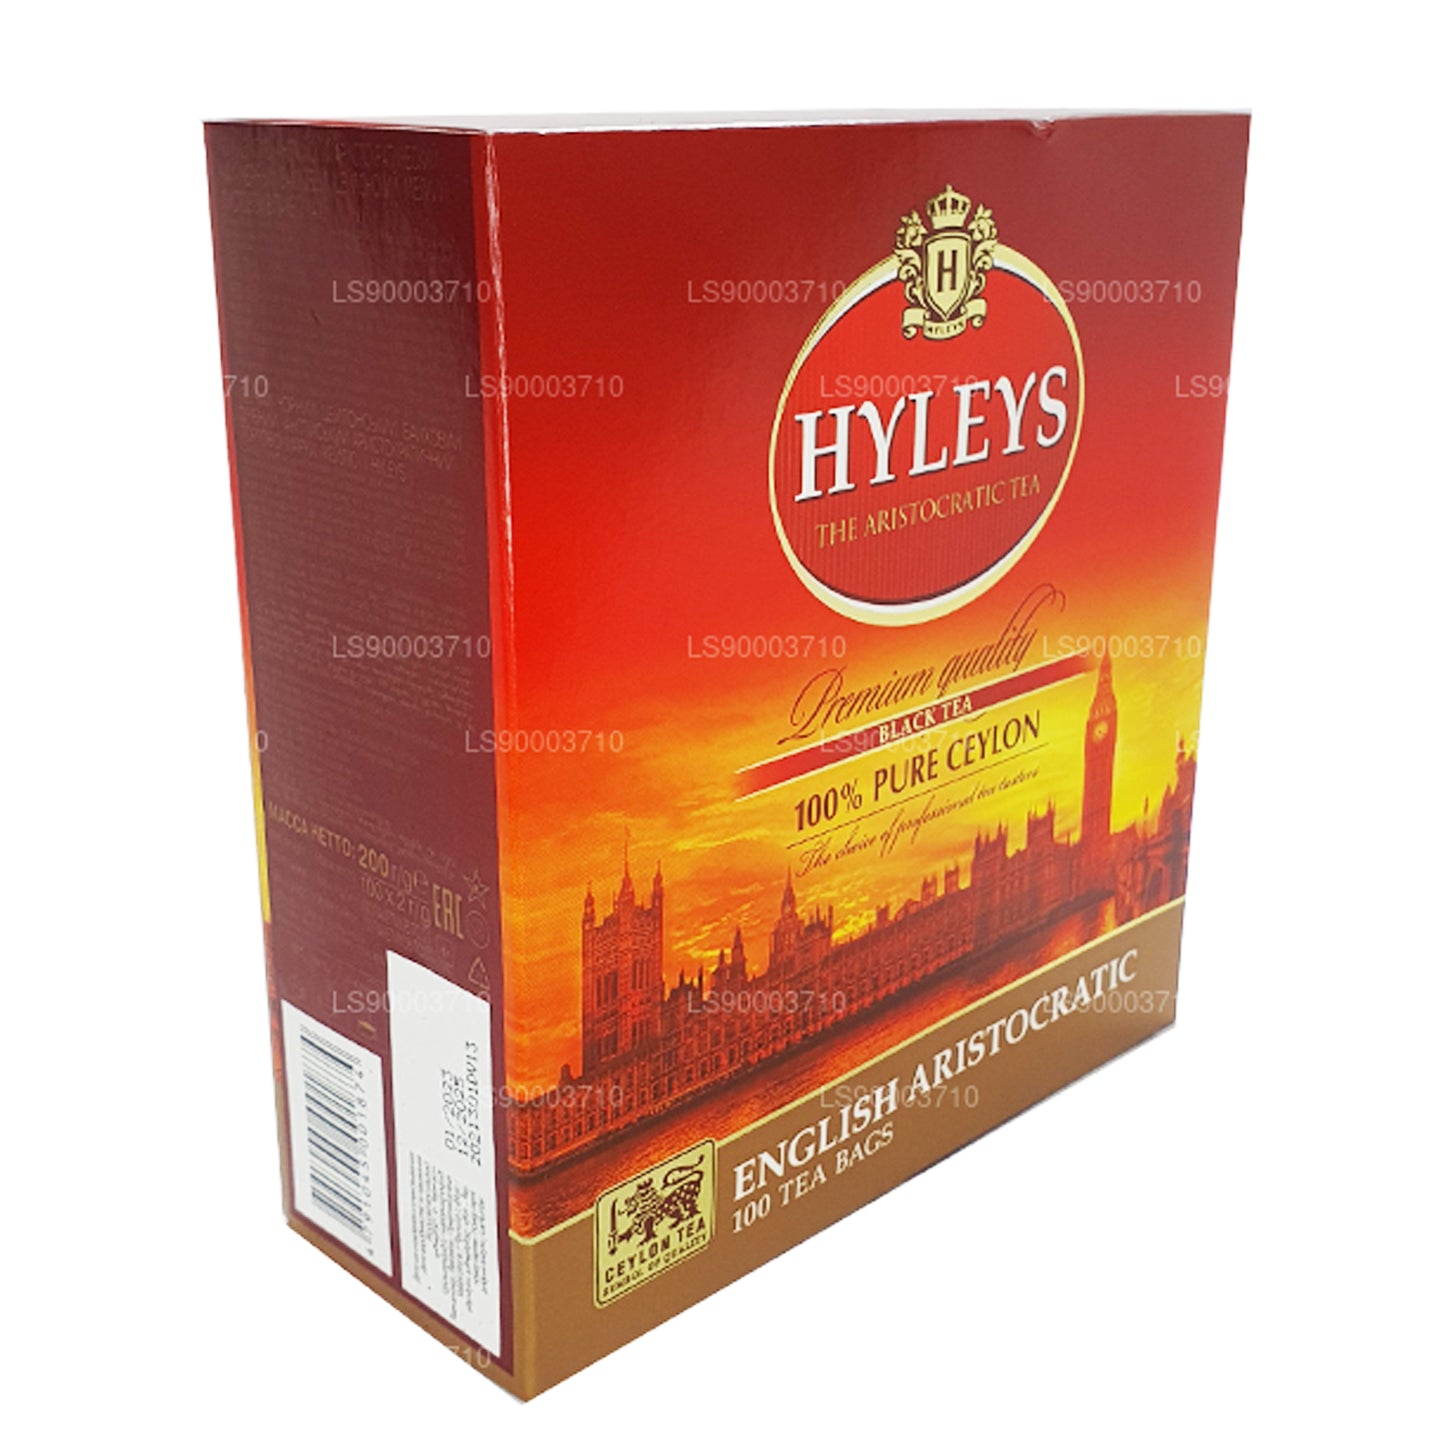 HYLEYS Premium kvalitet sort te 100 te Bages (200 g)